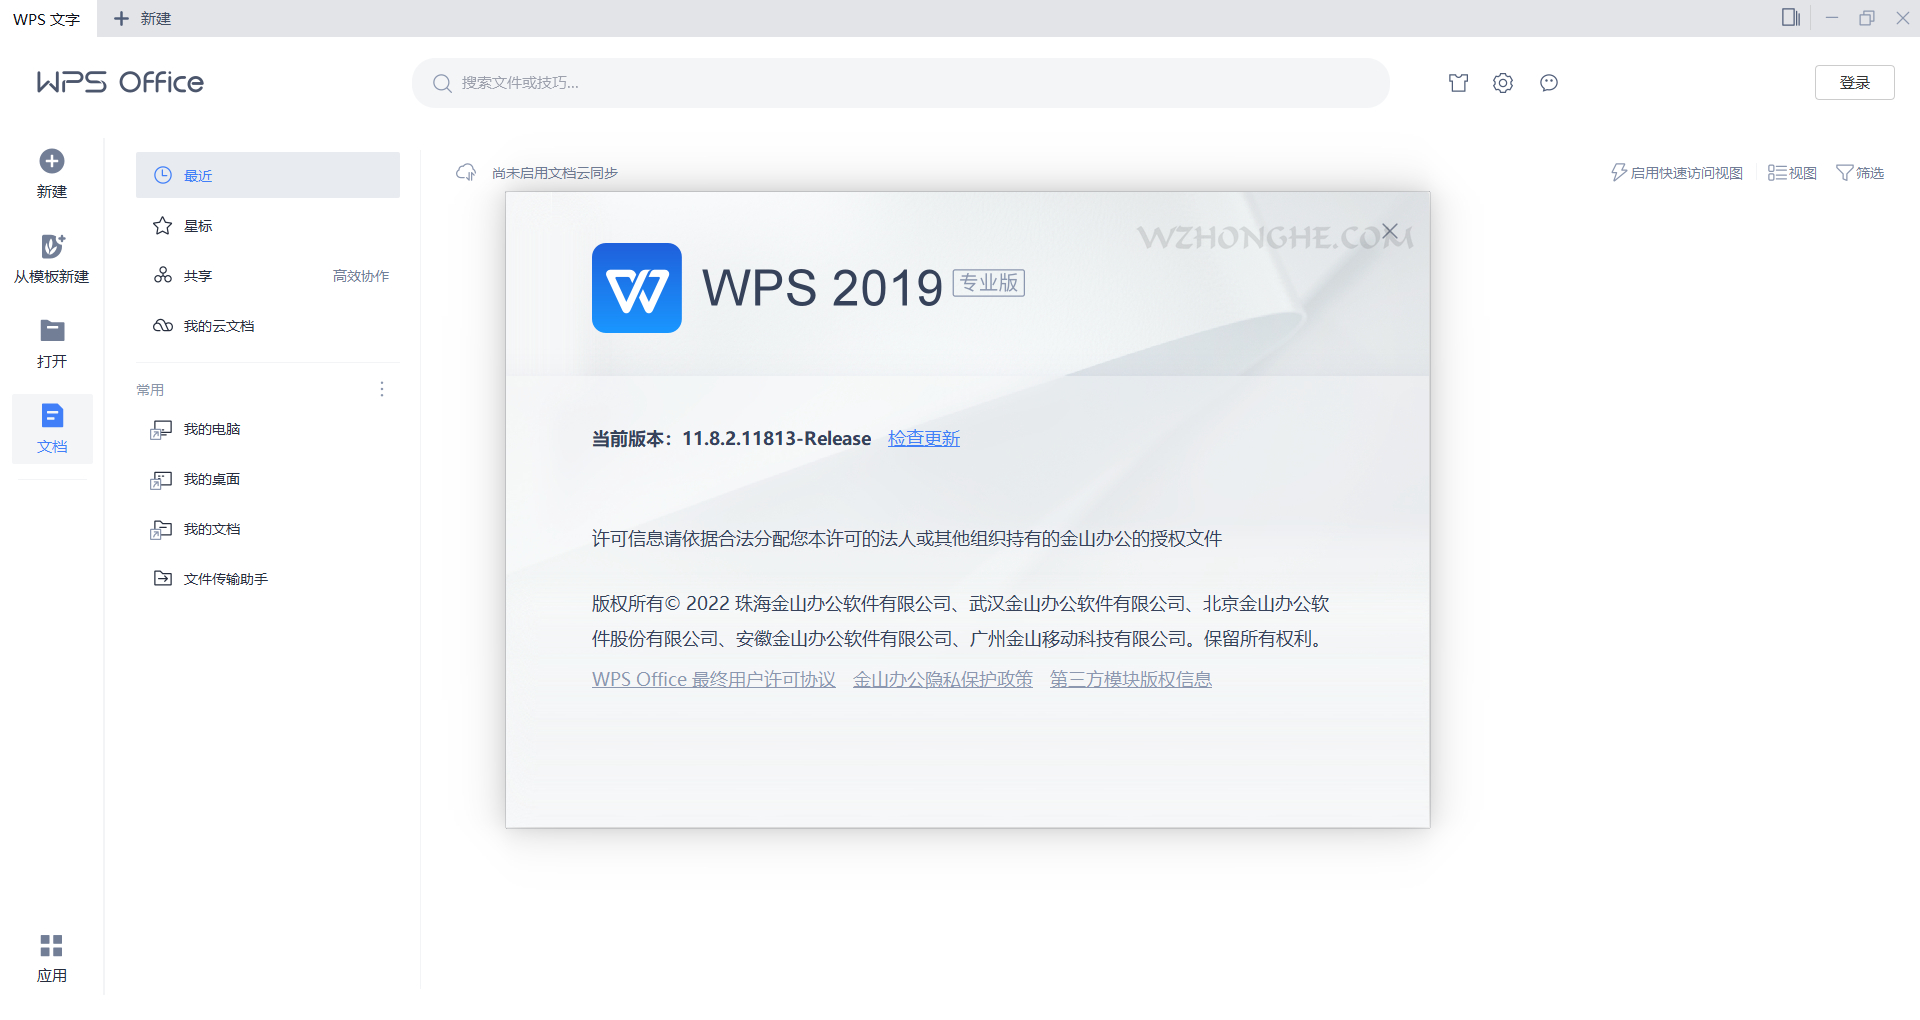 WPS Office - 无中和wzhonghe.com -3